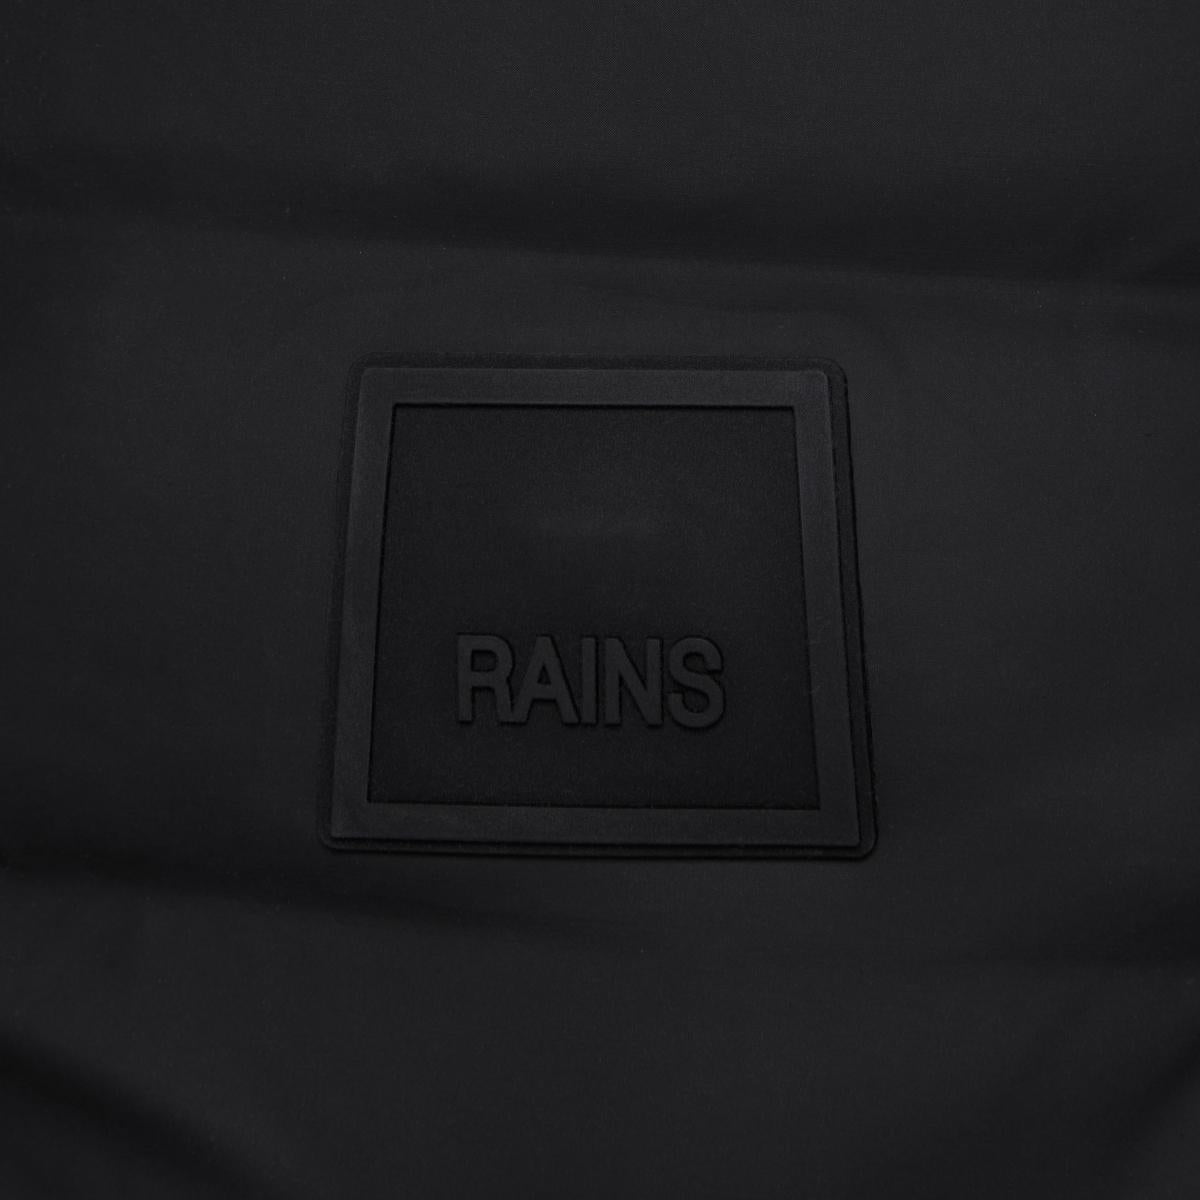 Rains Loop Backpack in Black